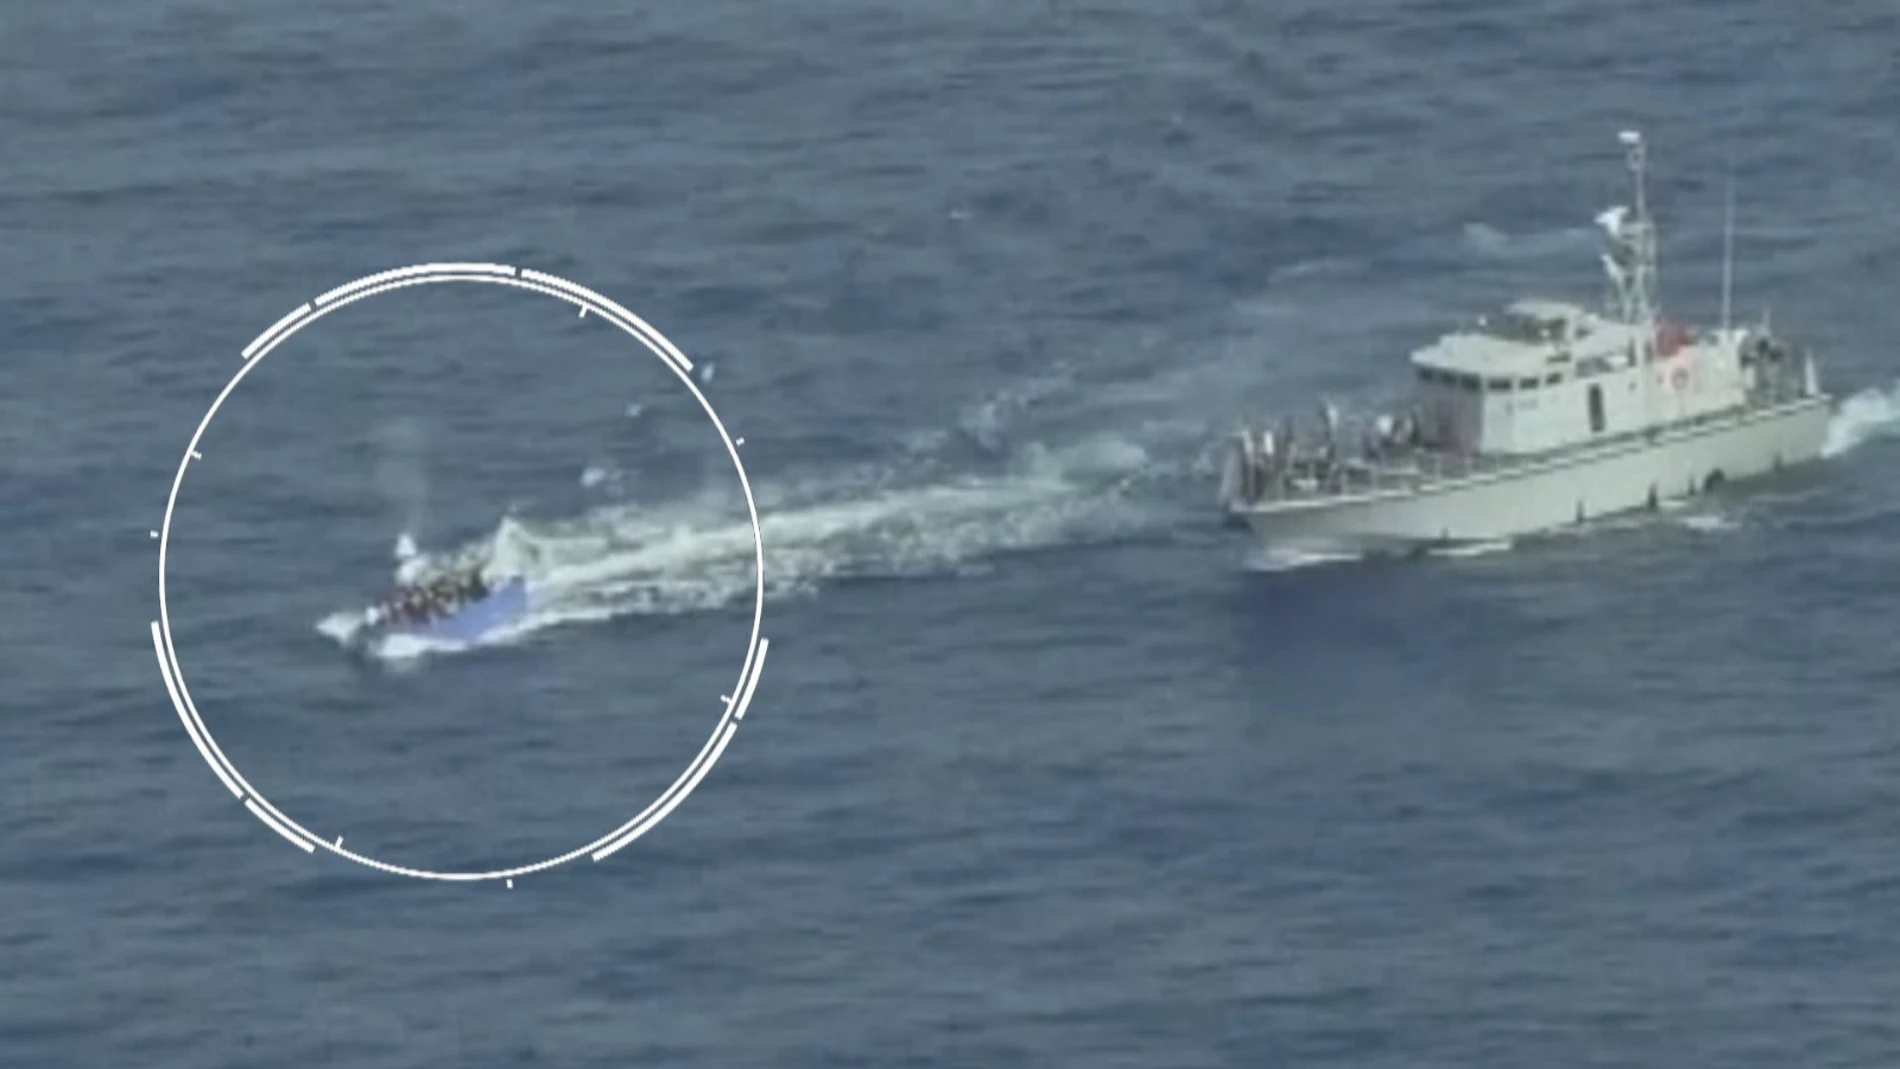 El bote de migrantes siendo perseguido por la Guardia Costera de Libia.